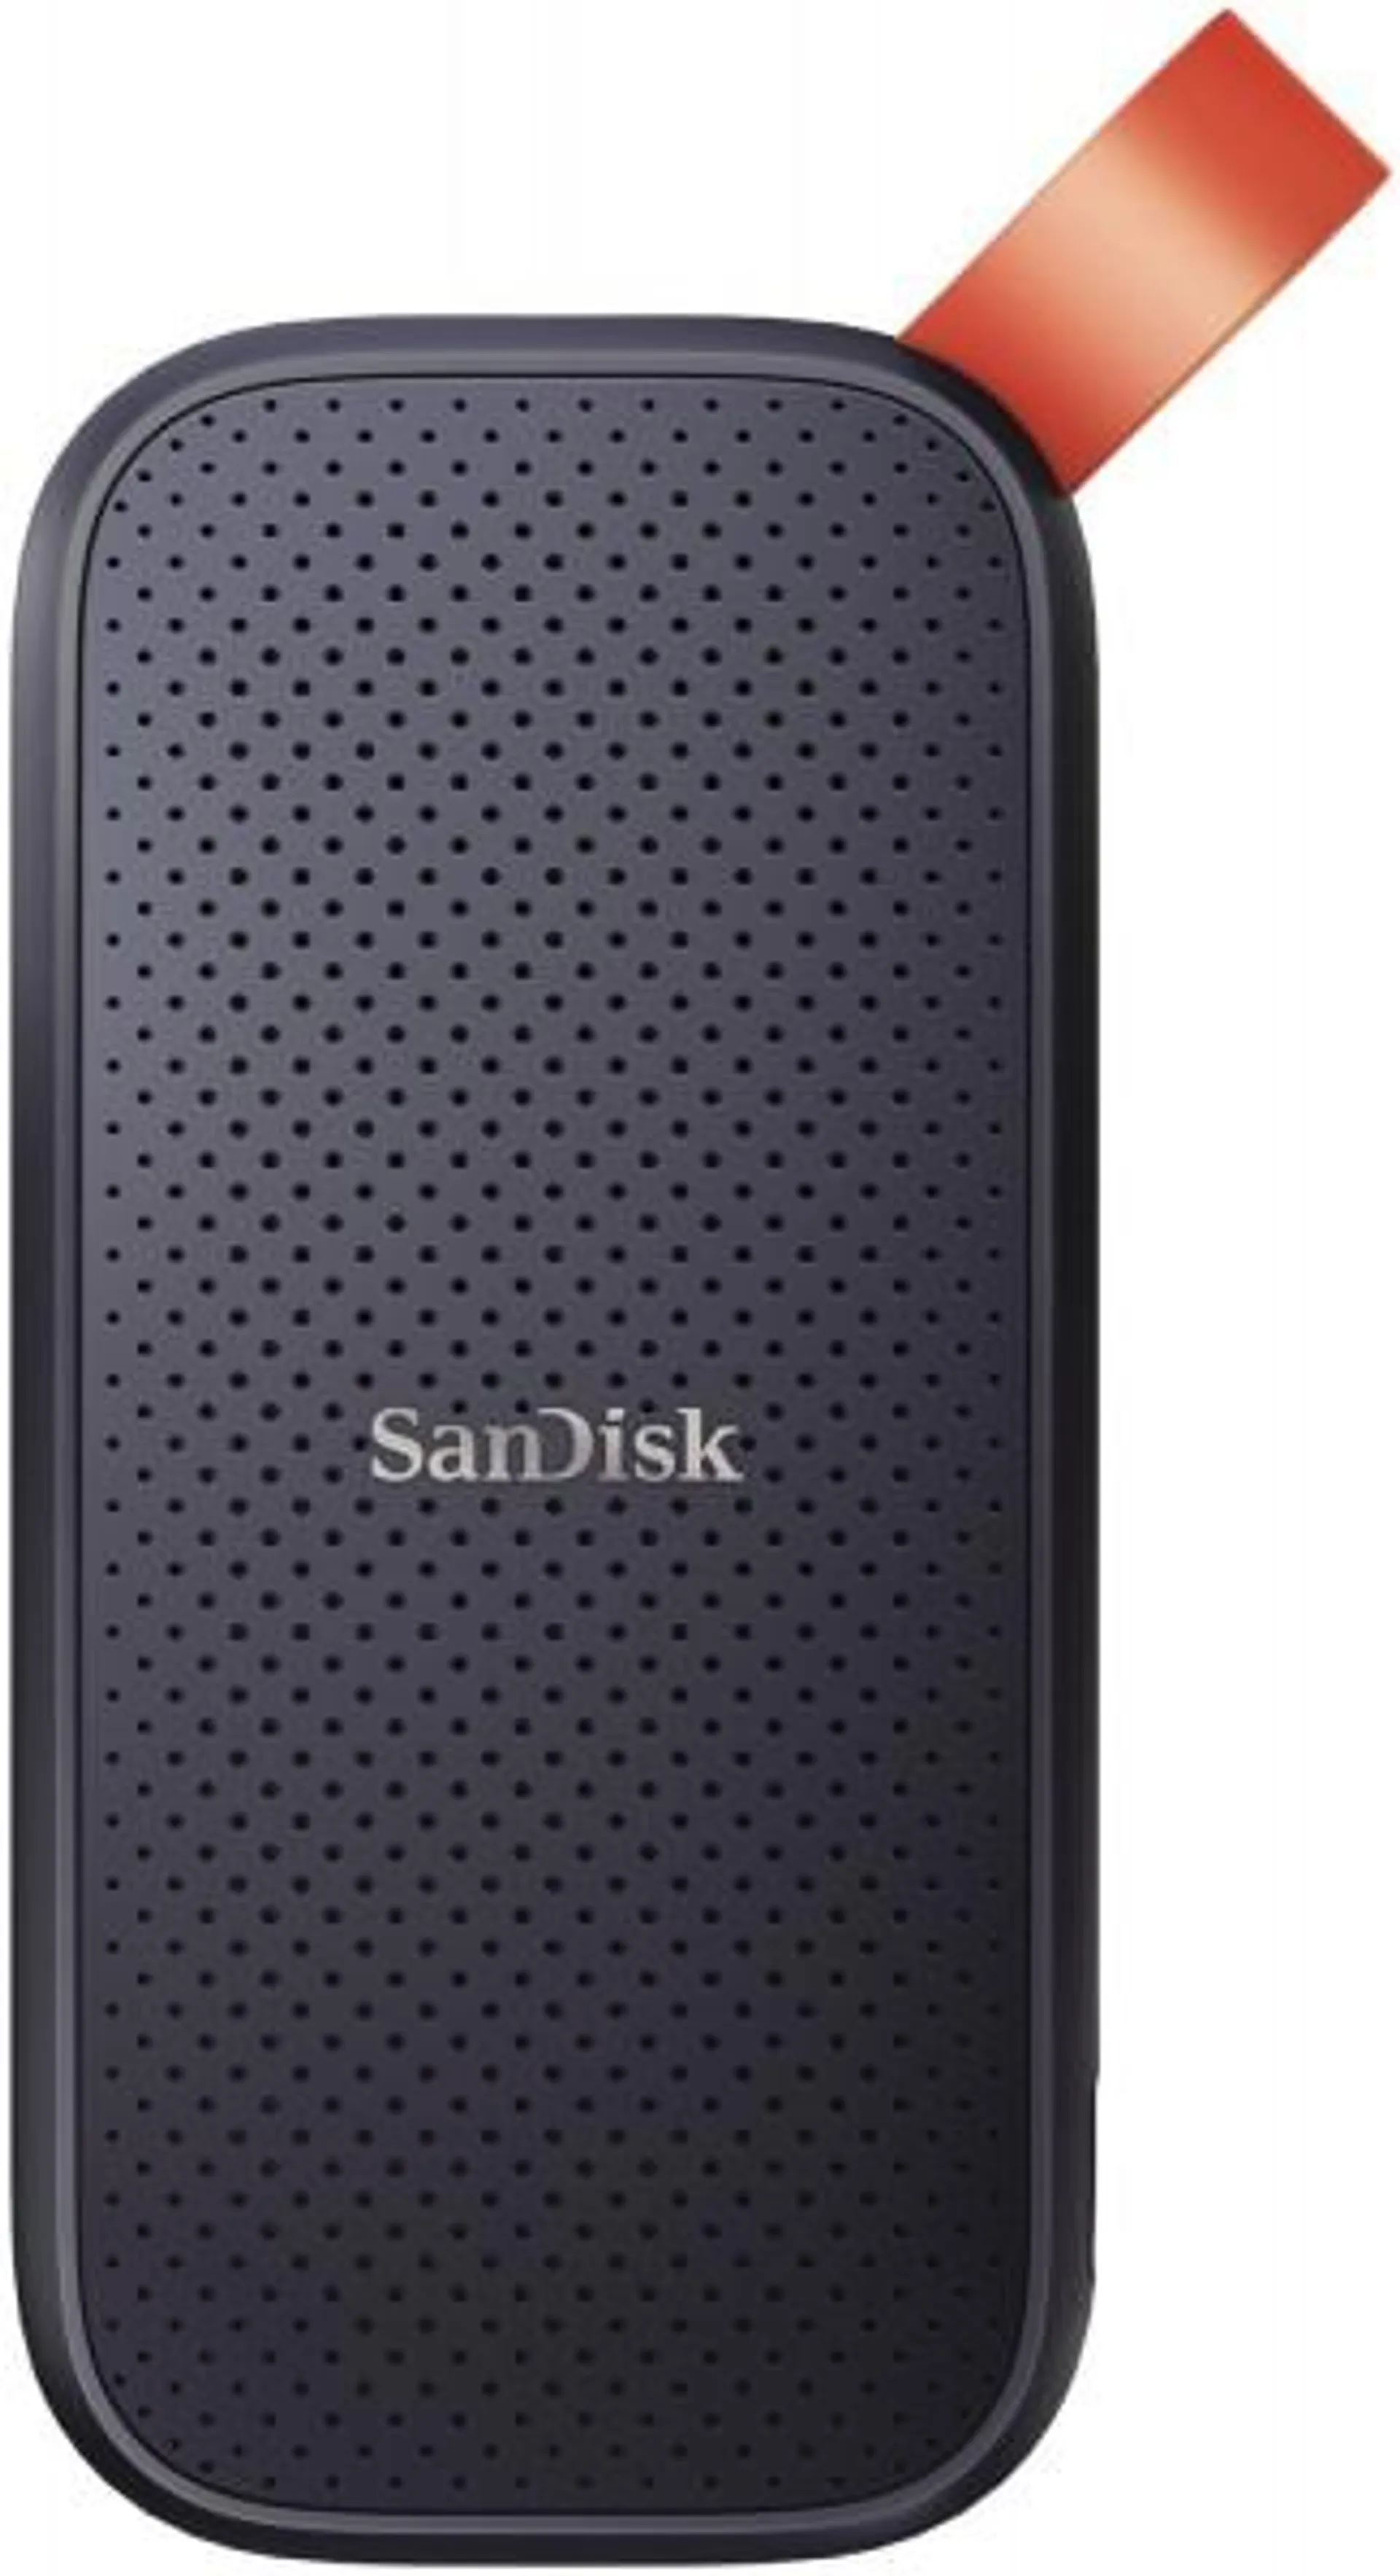 Sandisk Portable SSD (2TB) schwarz